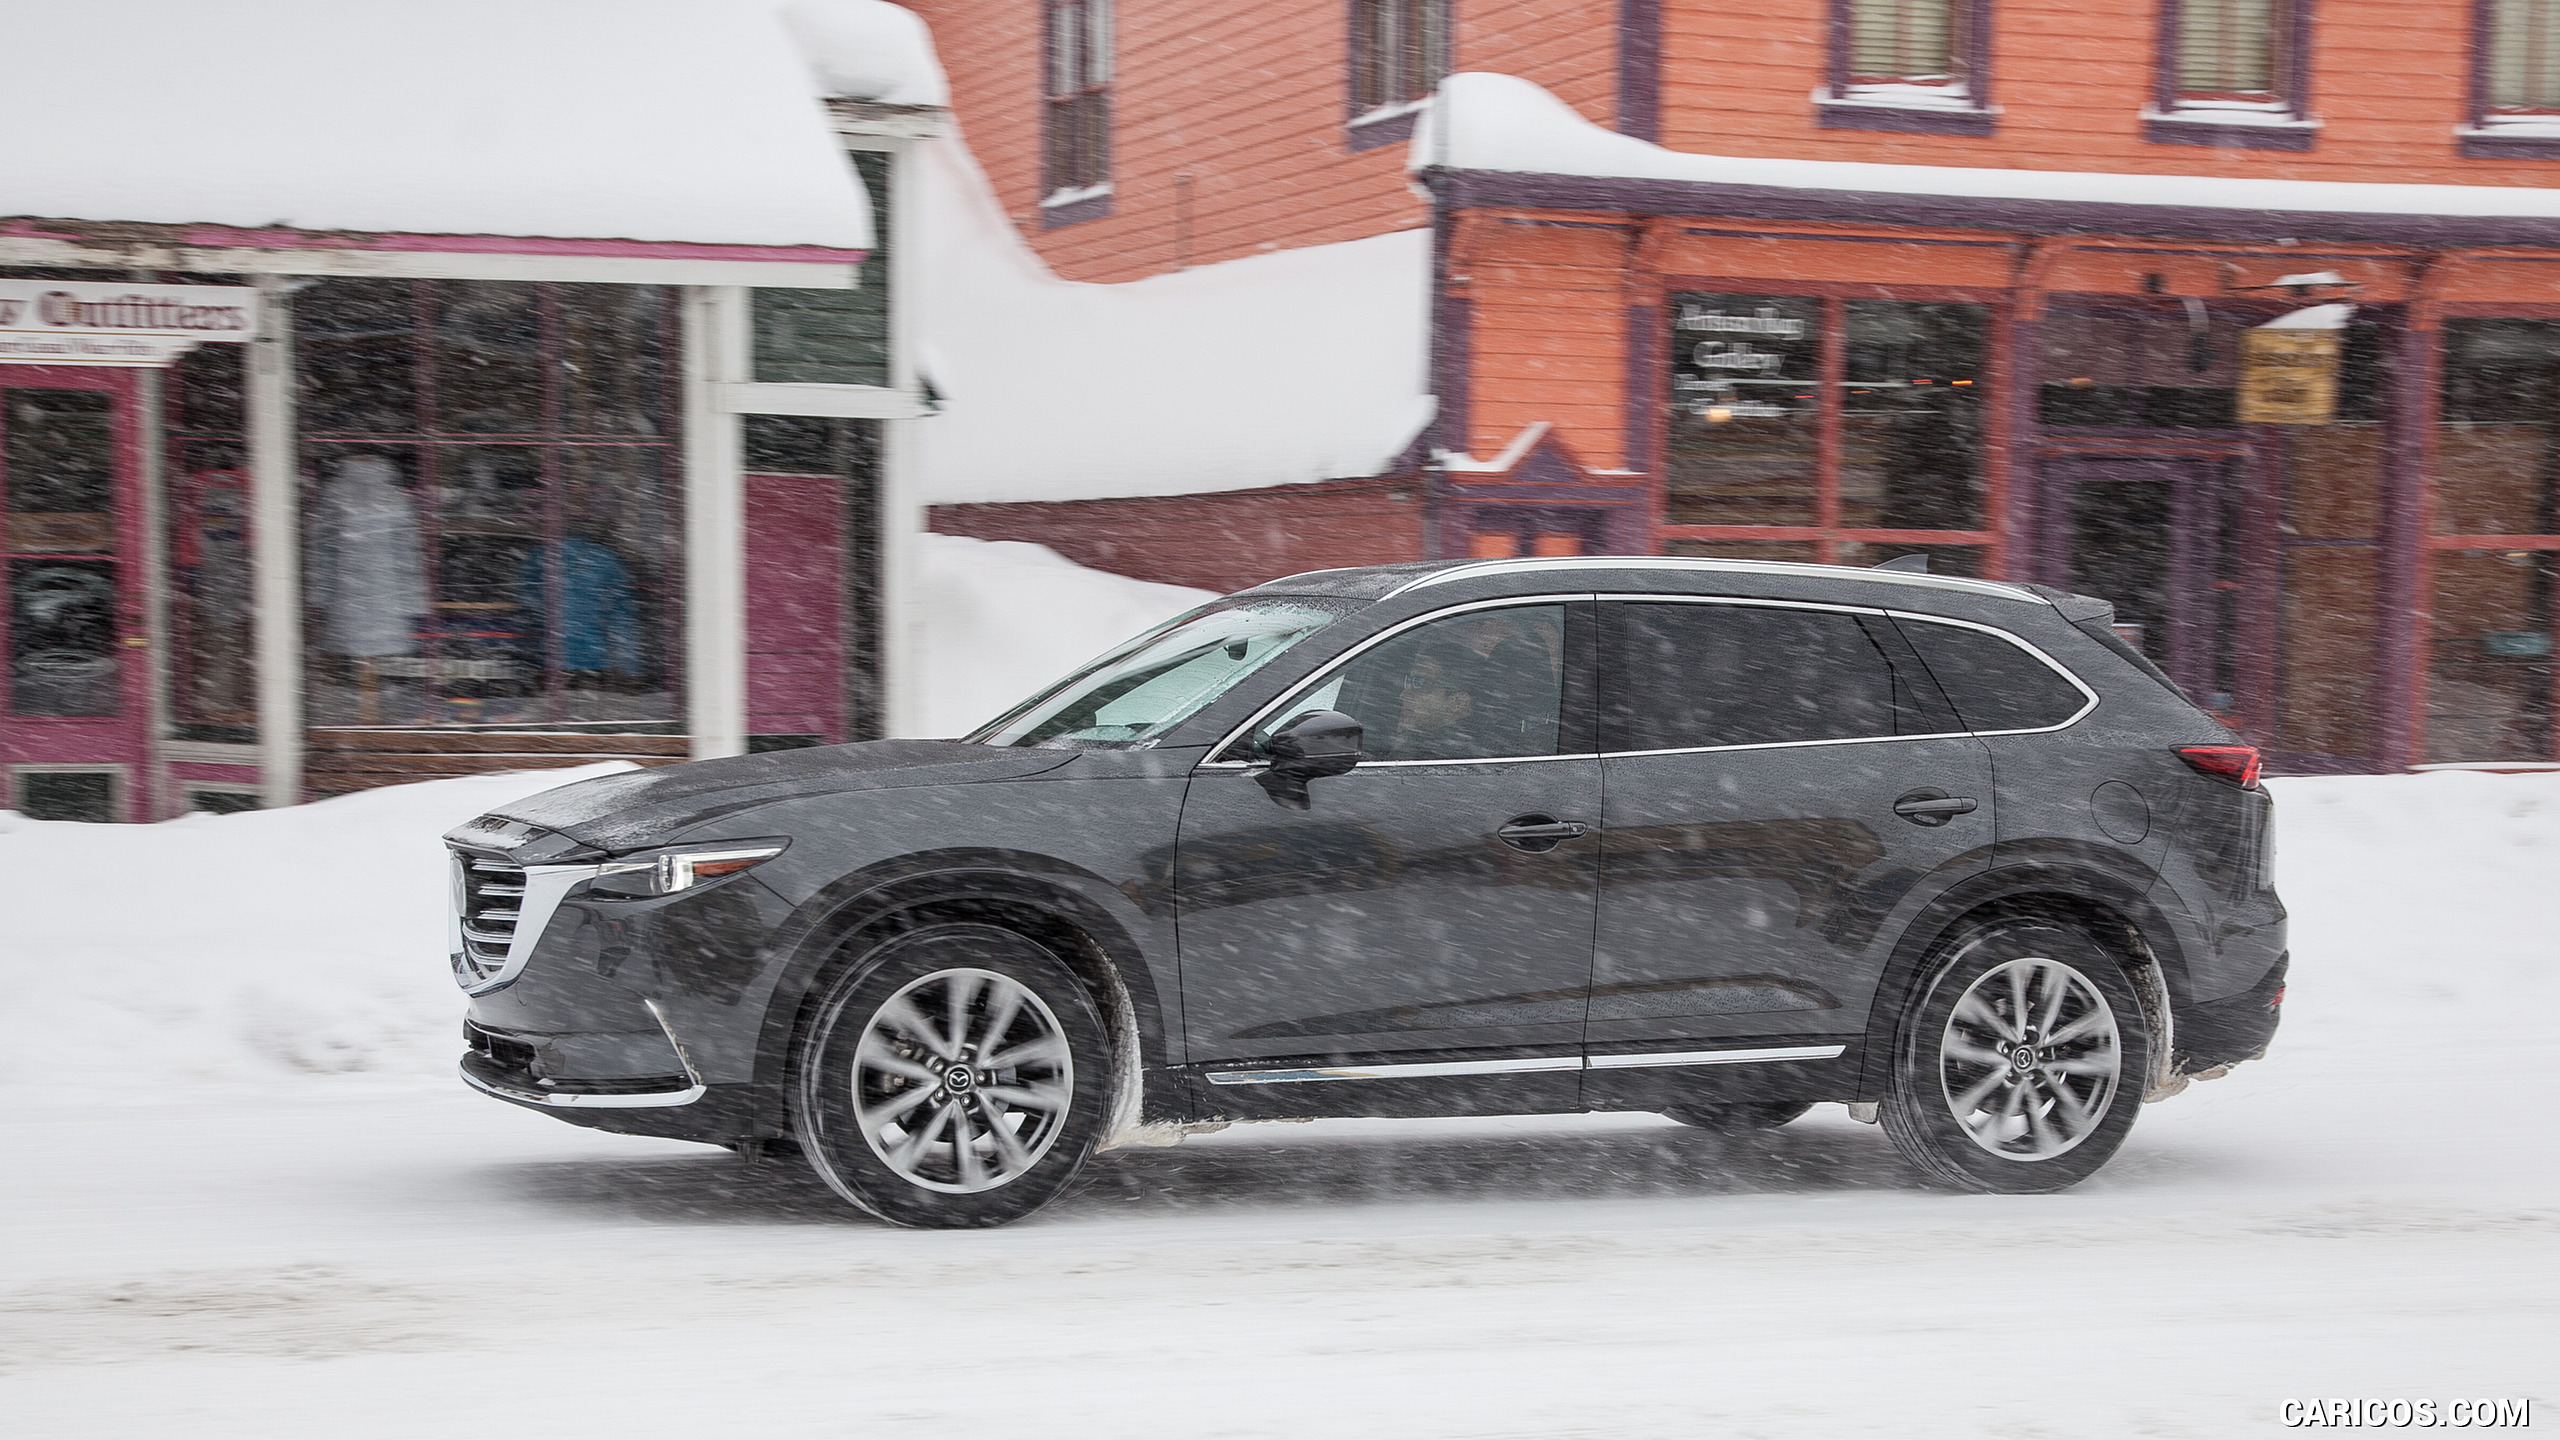 2016 Mazda CX-9 in Snow - Side, #59 of 69